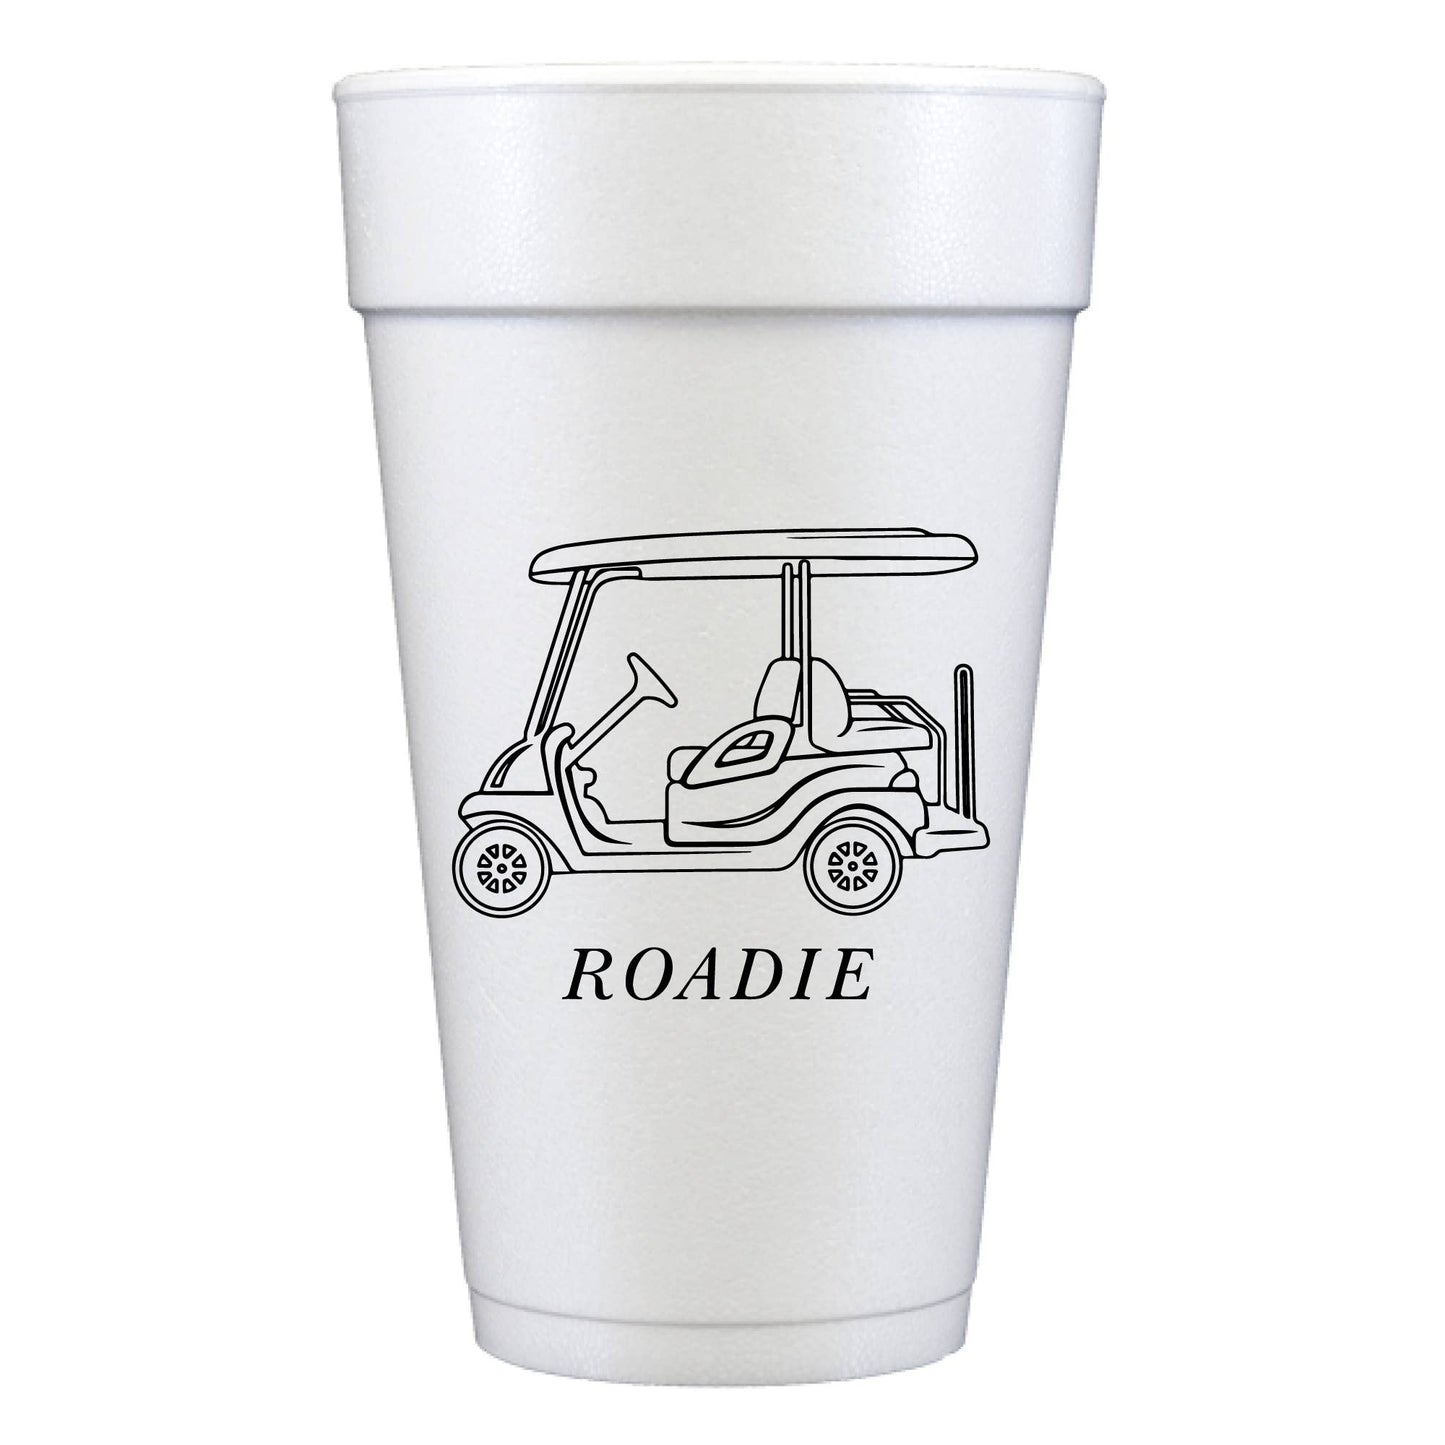 20 Oz Foam Cups: Roadie